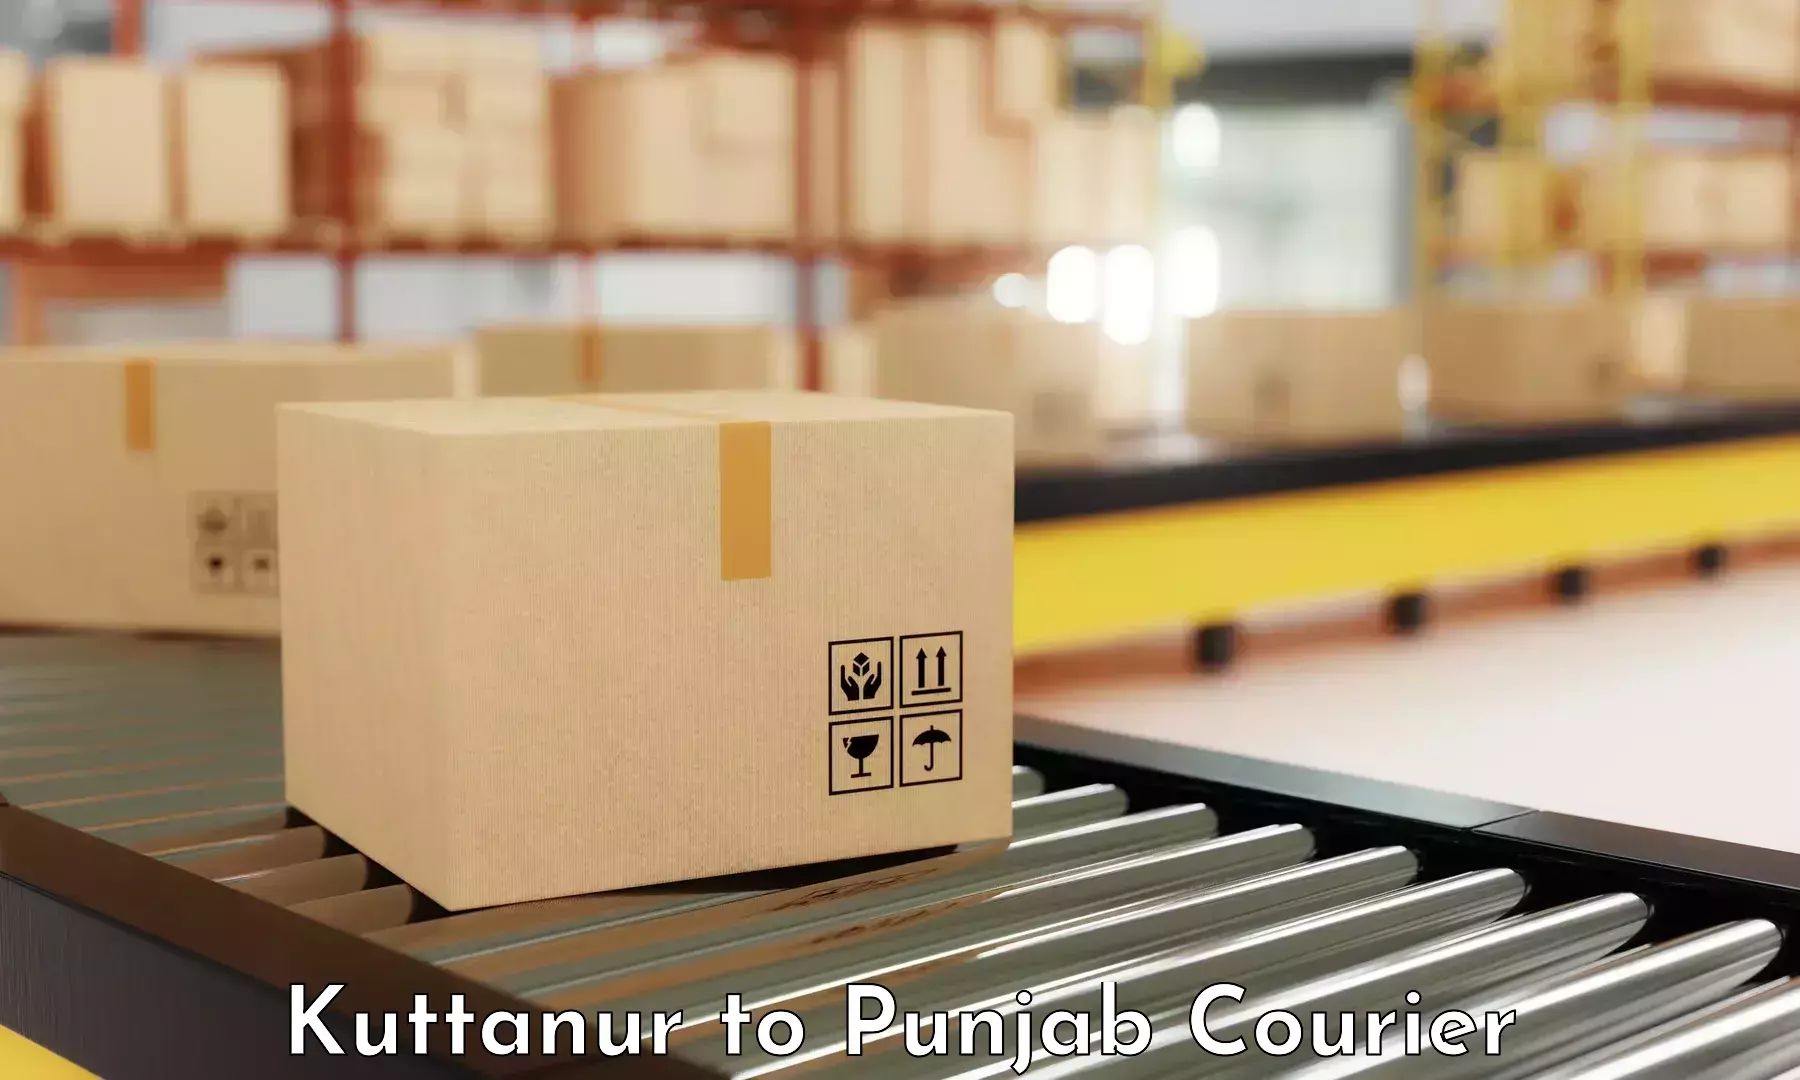 Courier service partnerships Kuttanur to Sirhind Fatehgarh